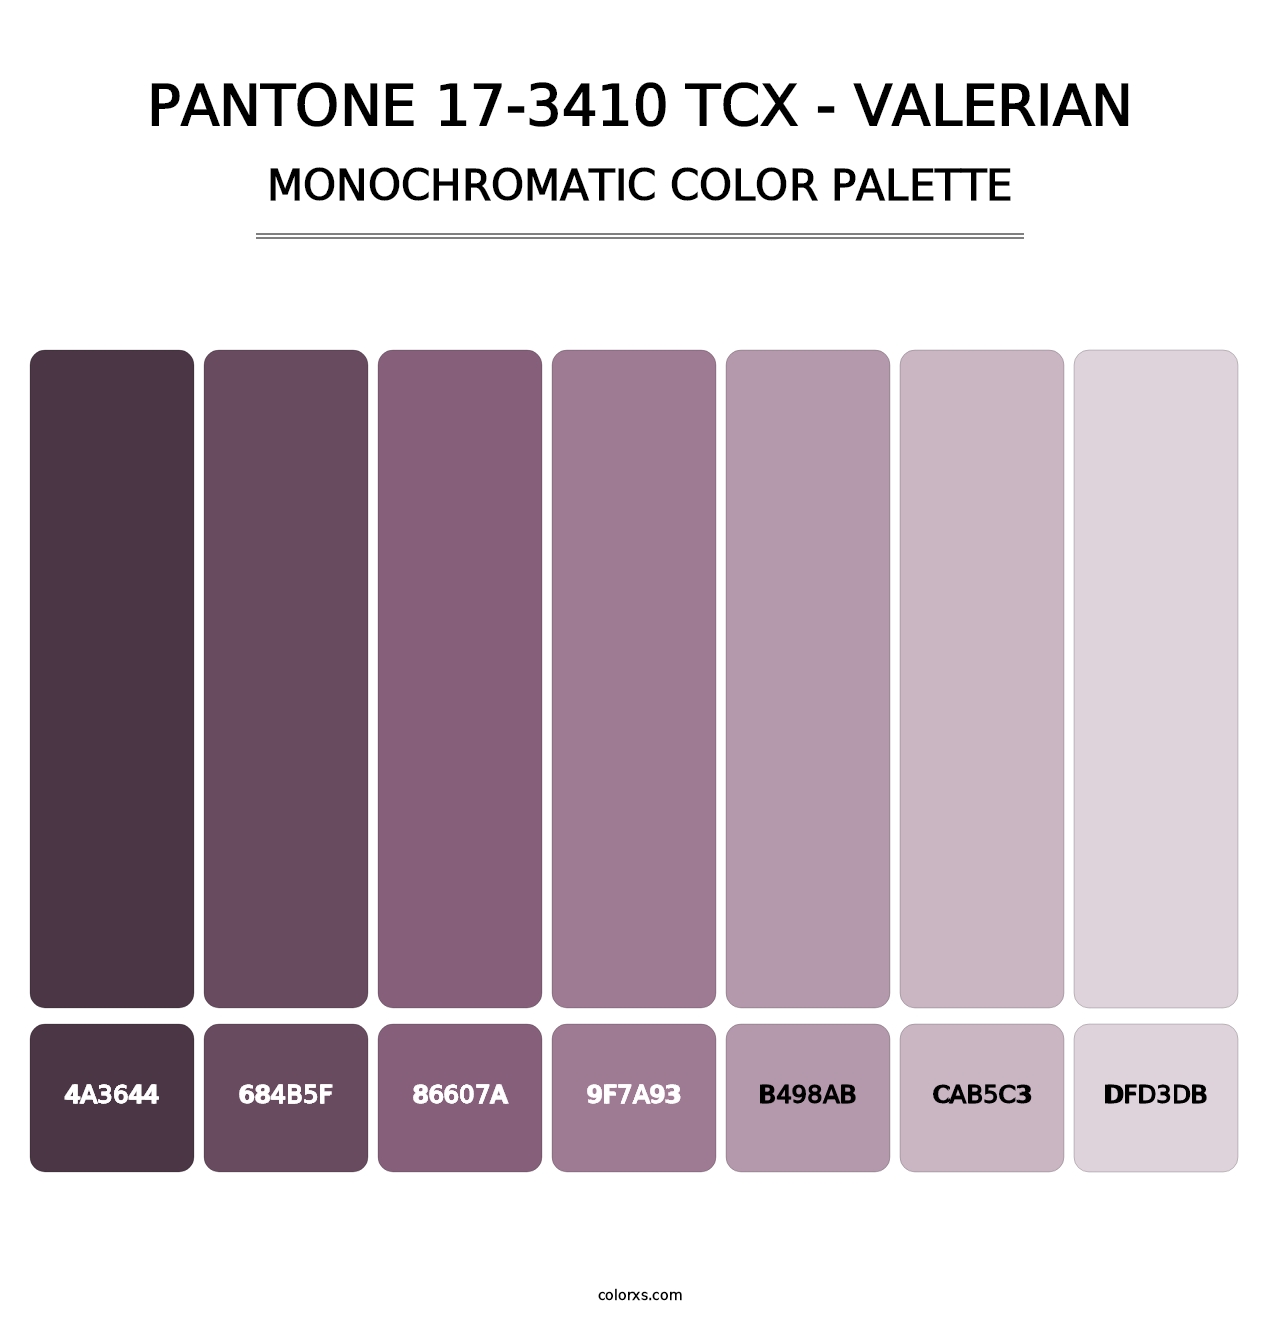 PANTONE 17-3410 TCX - Valerian - Monochromatic Color Palette